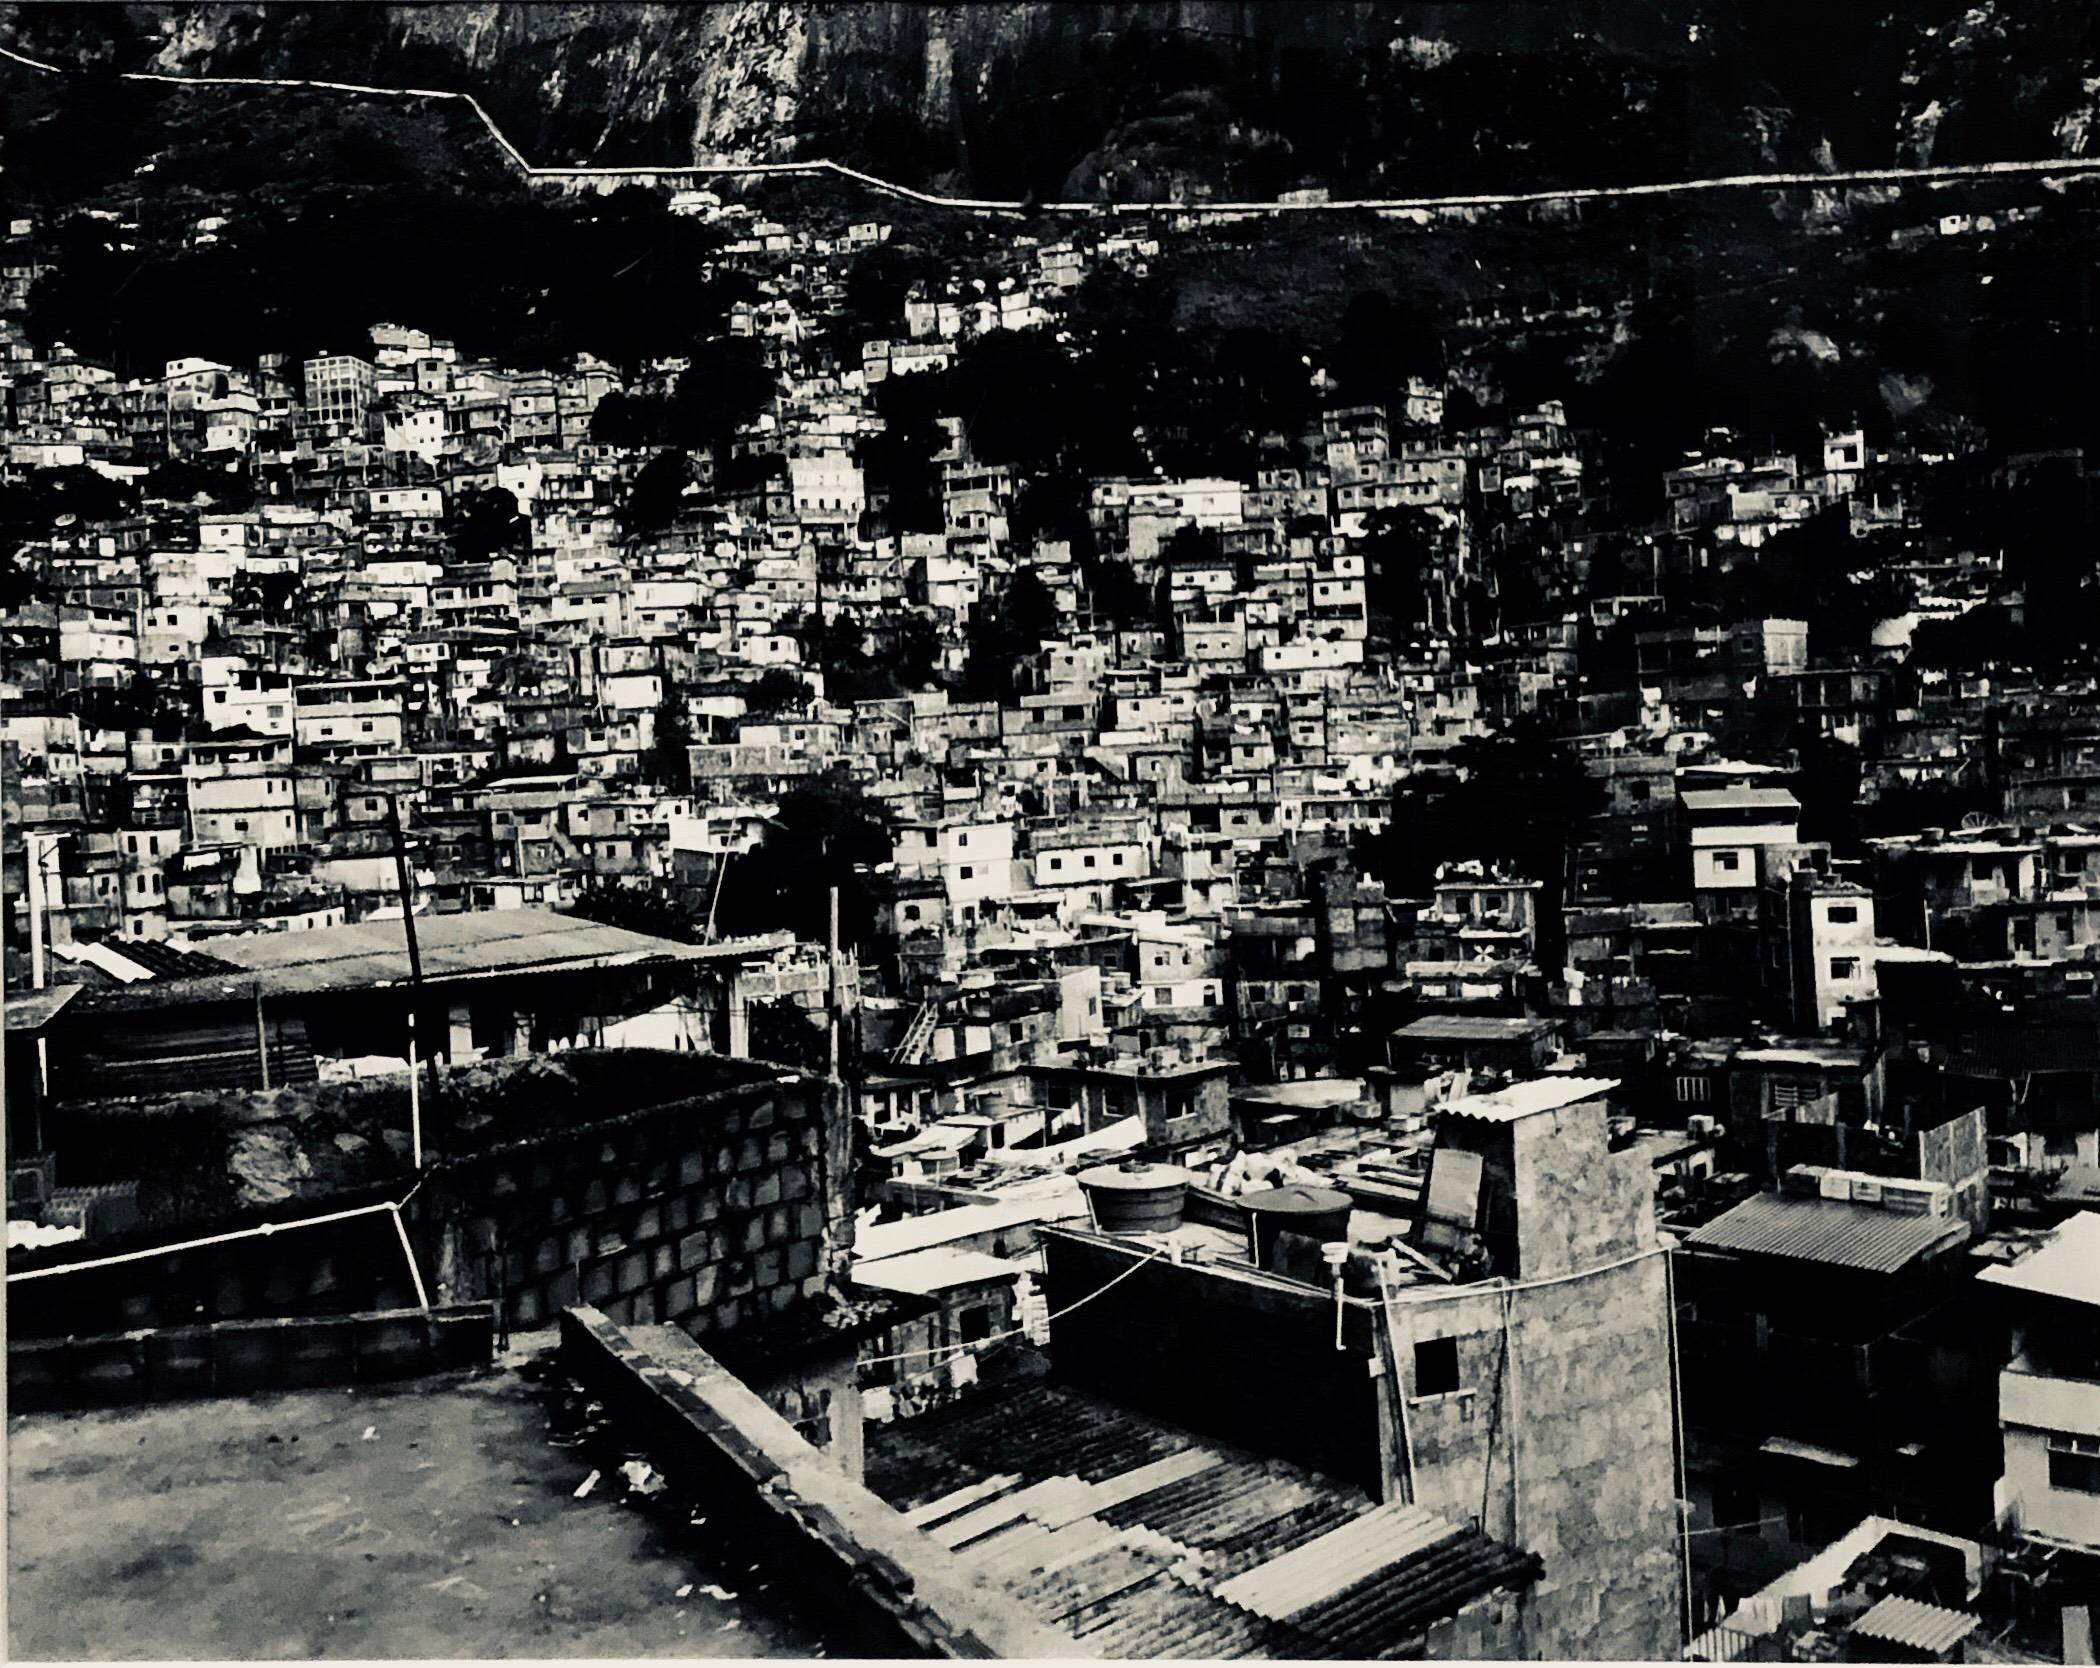 Paul Rowland Black and White Photograph – Großformatige brasilianische Favela-Stadtlandschaft aus Silber mit Gelatinesilber-Druck Rio de Janeiro